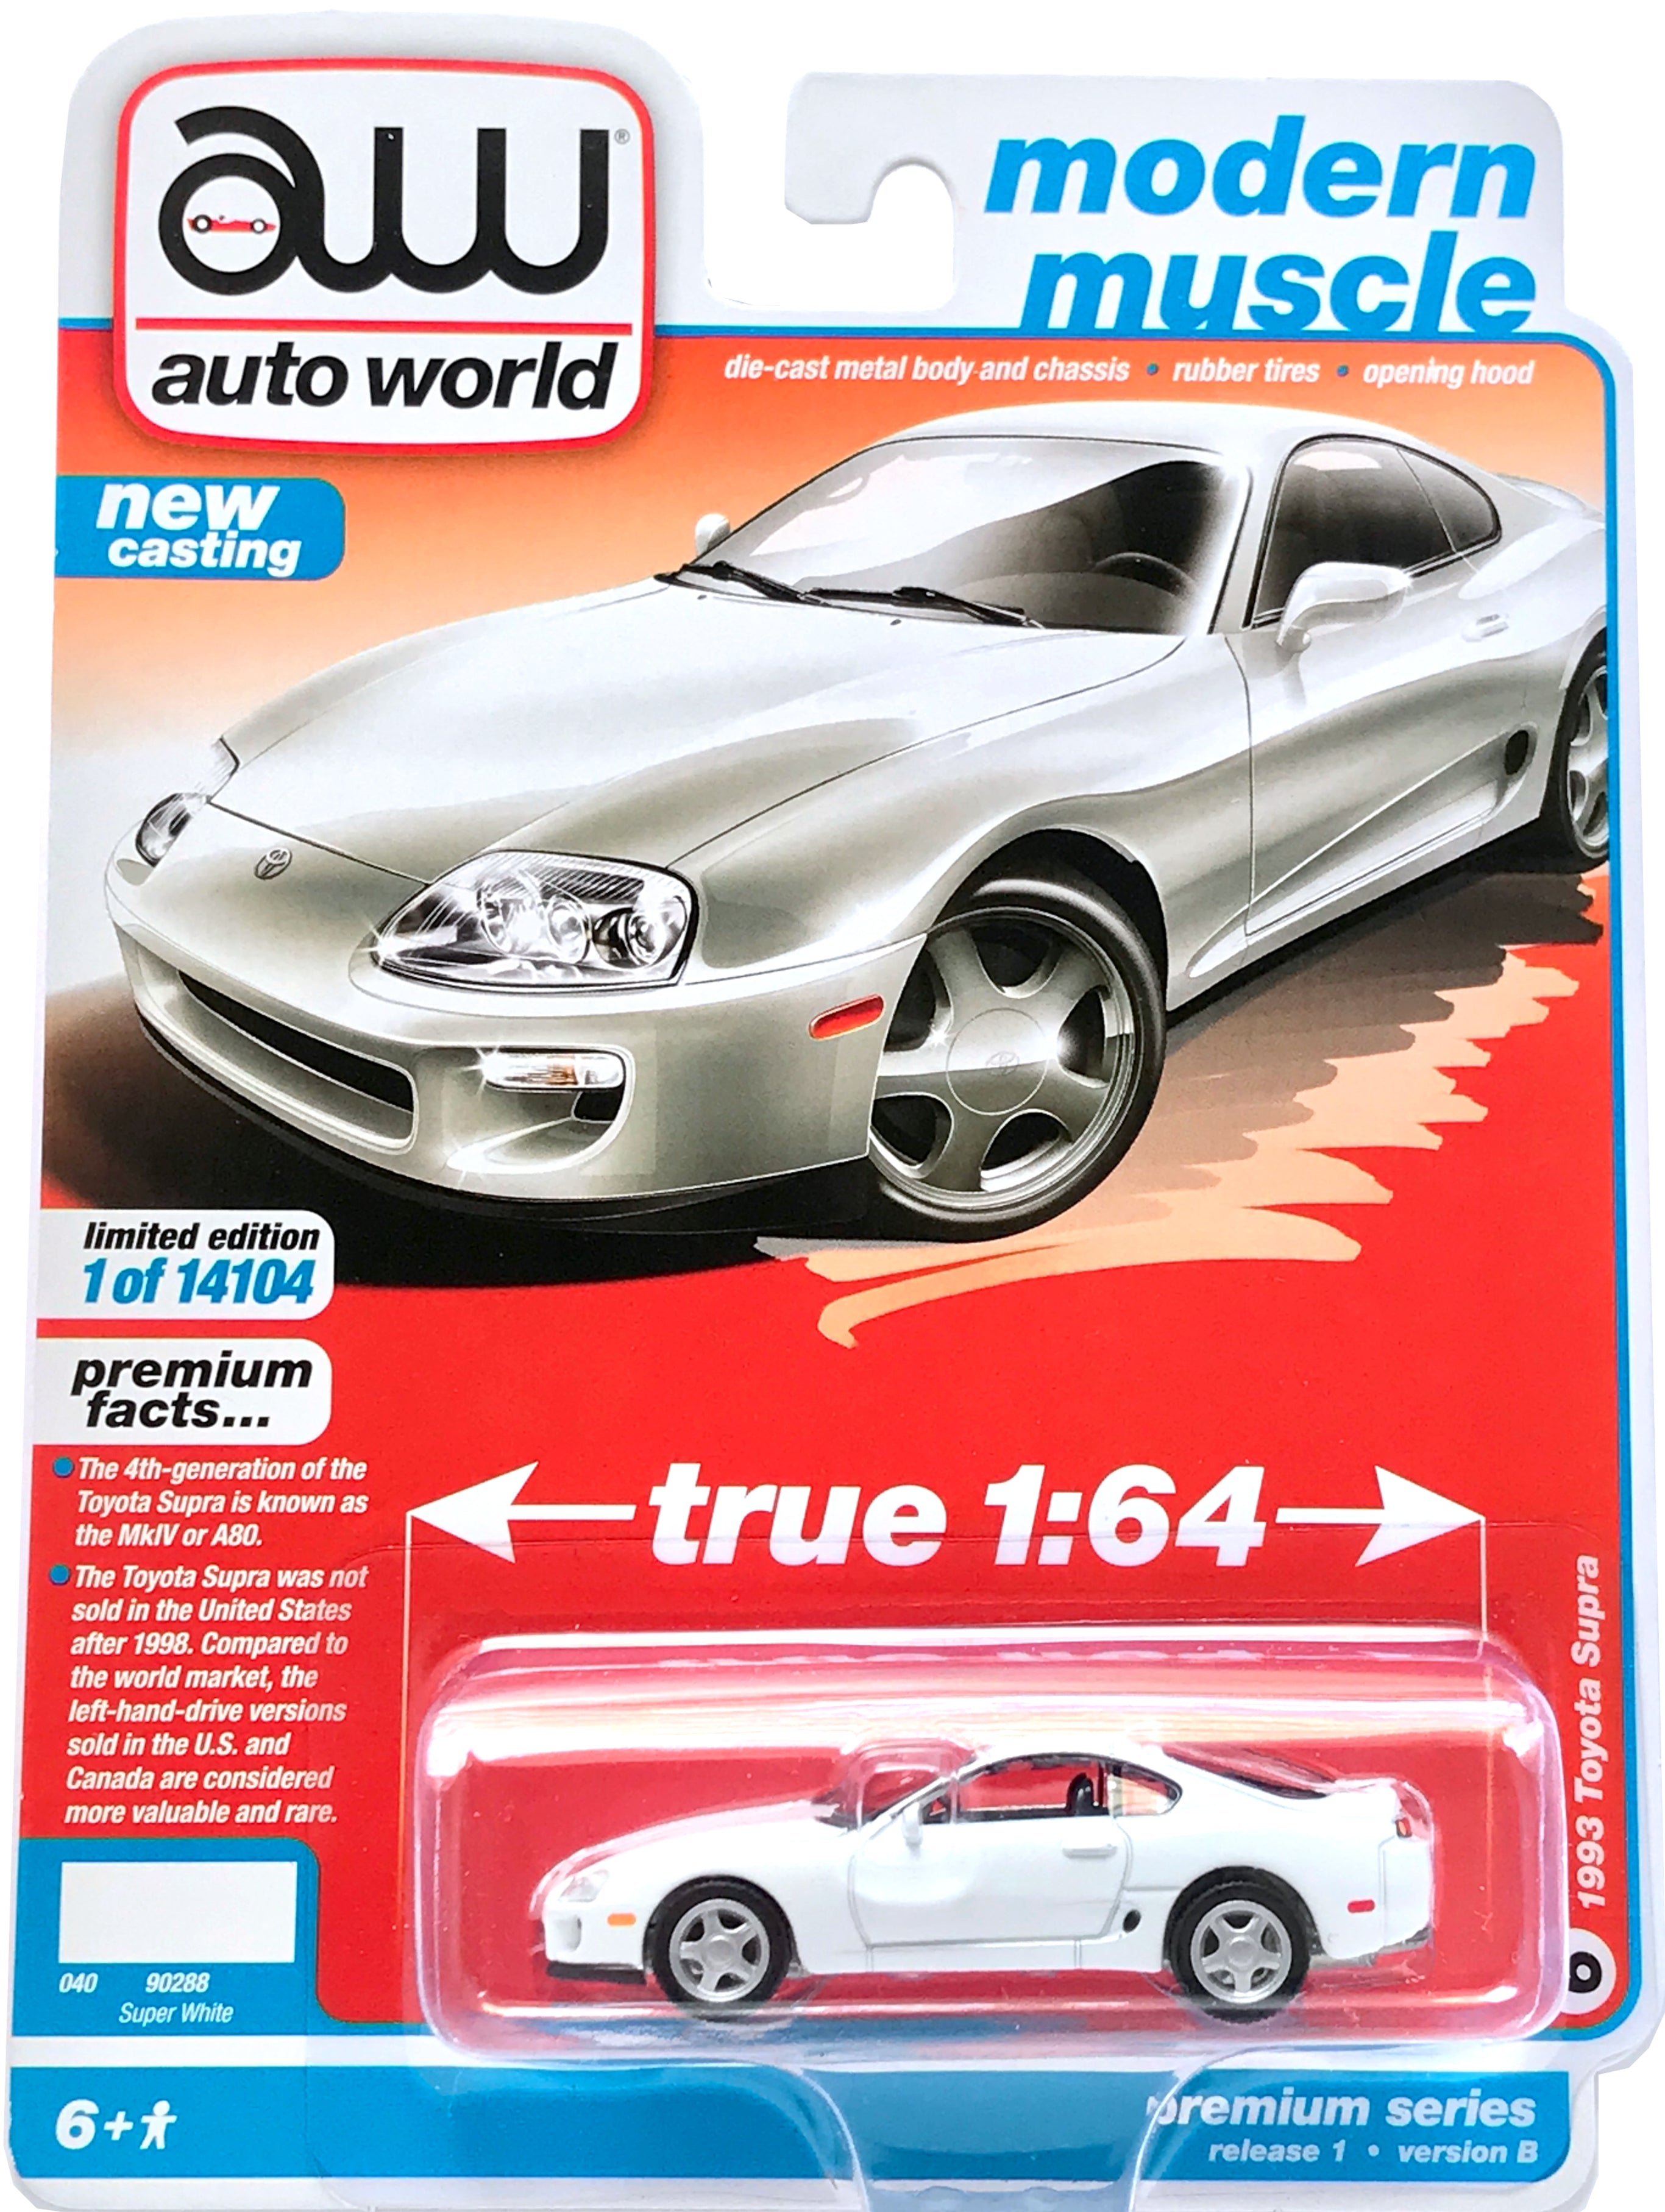 DieCast Hotwheels '20 Toyota GR Supra - HW Speed Graphics 5/10 [White]  178/250 for unisex, children